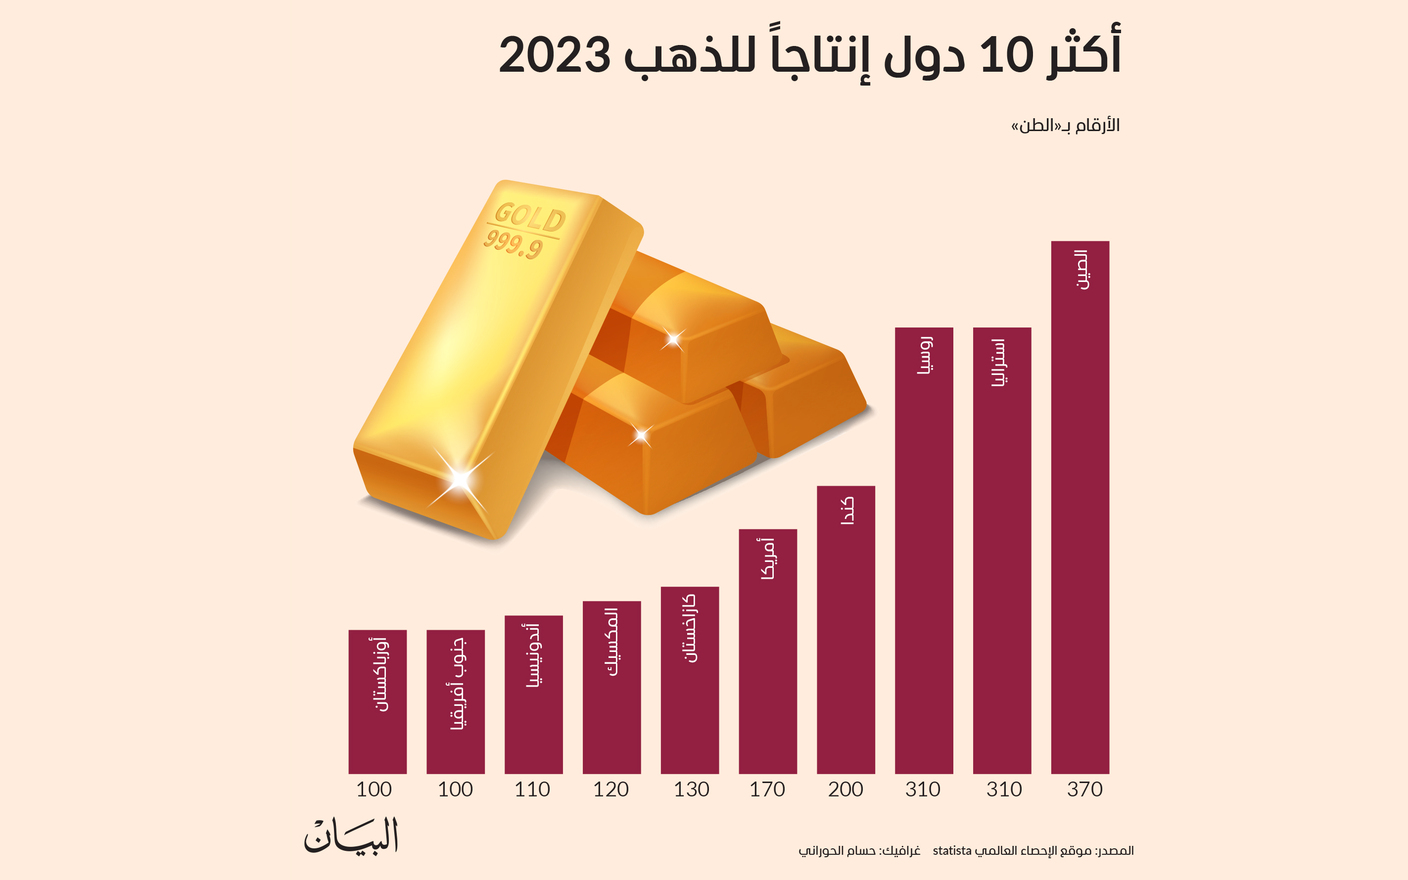 أكثر 10 دول في إنتاج للذهب في 2023